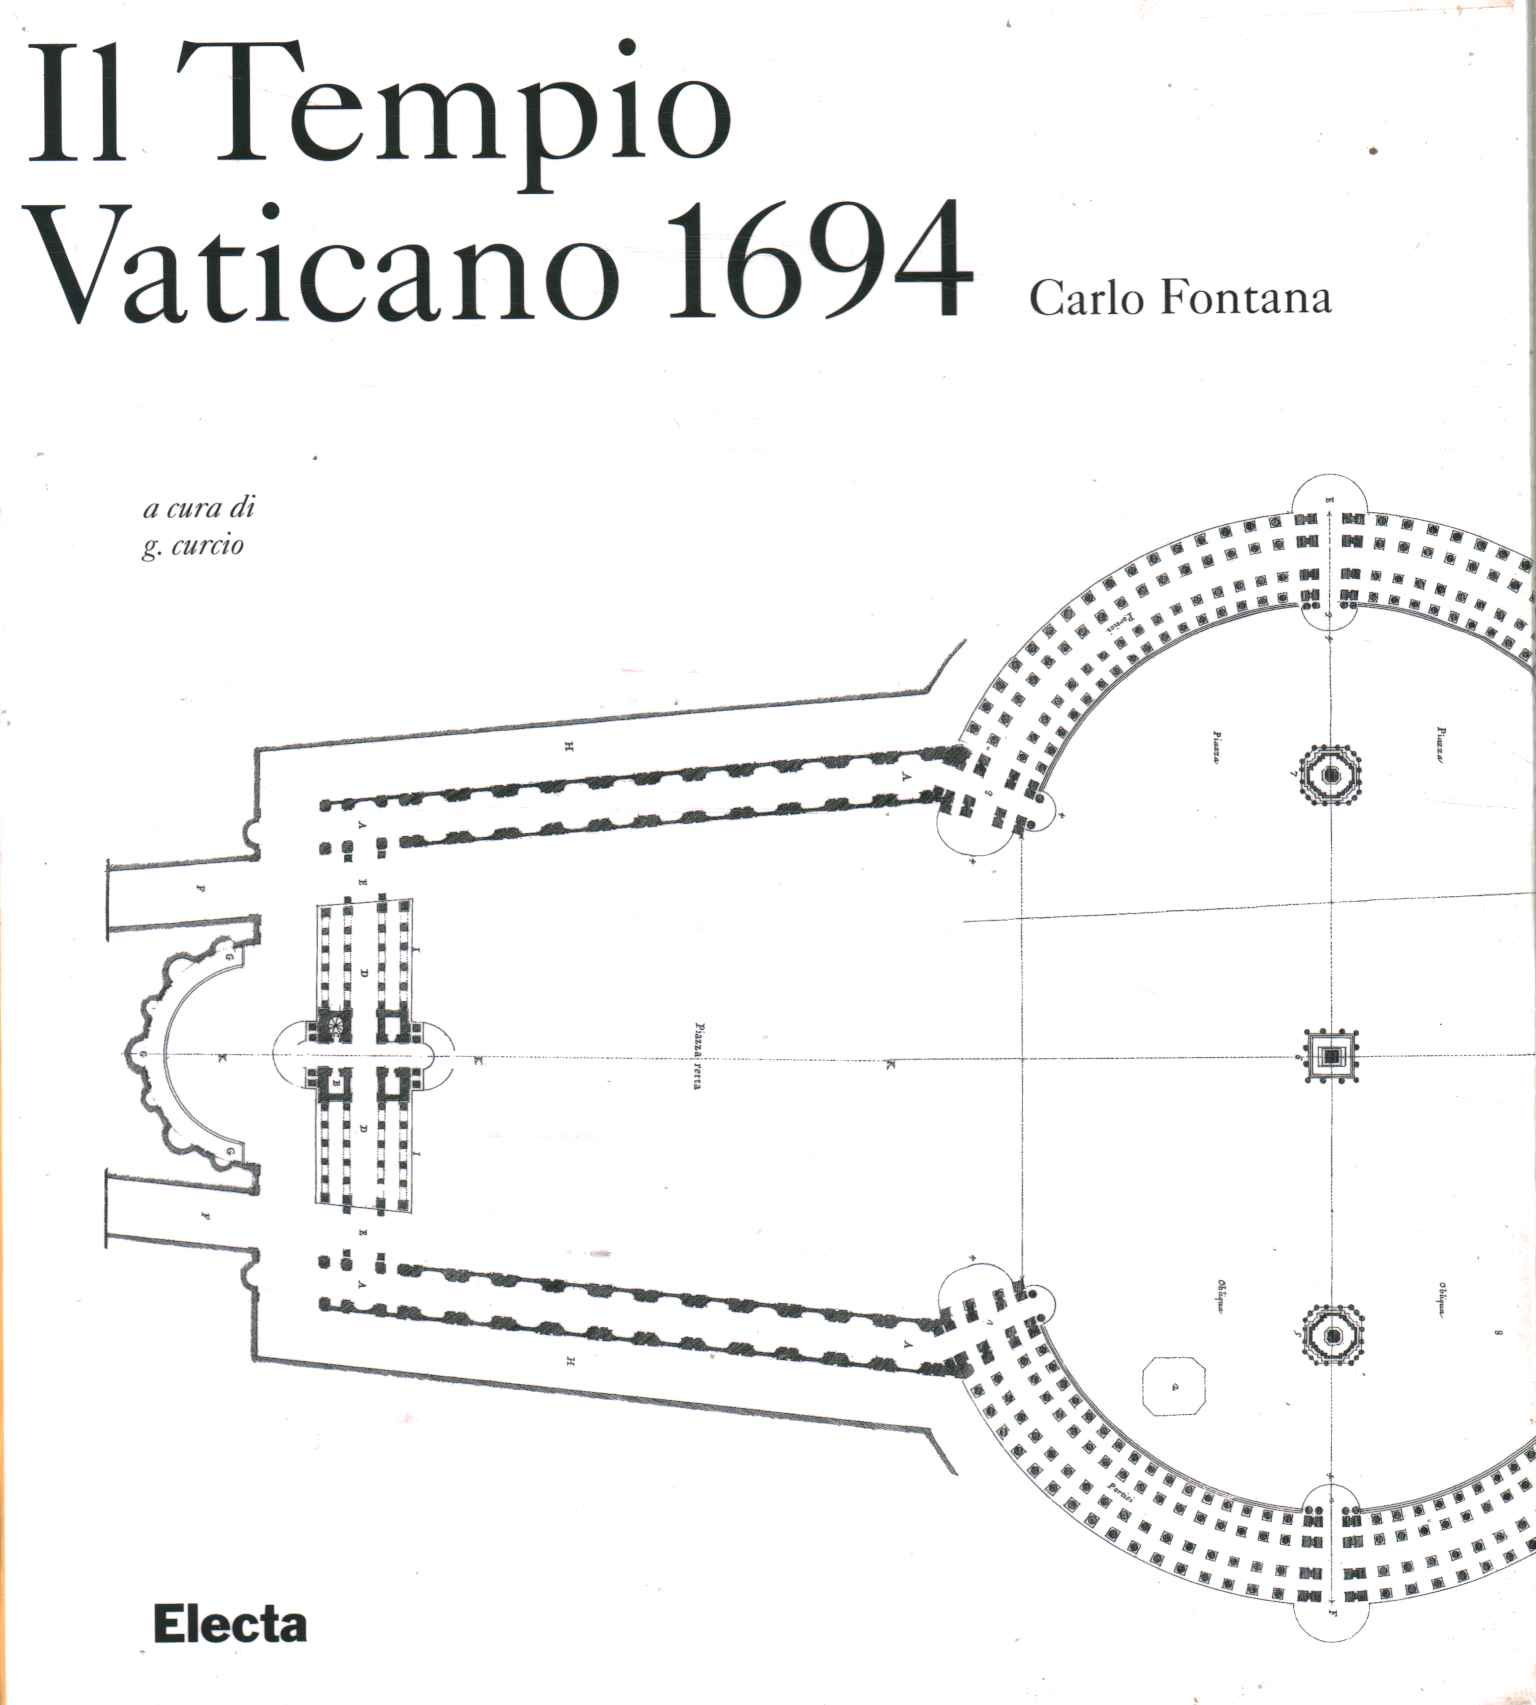 Der Vatikanische Tempel 1694